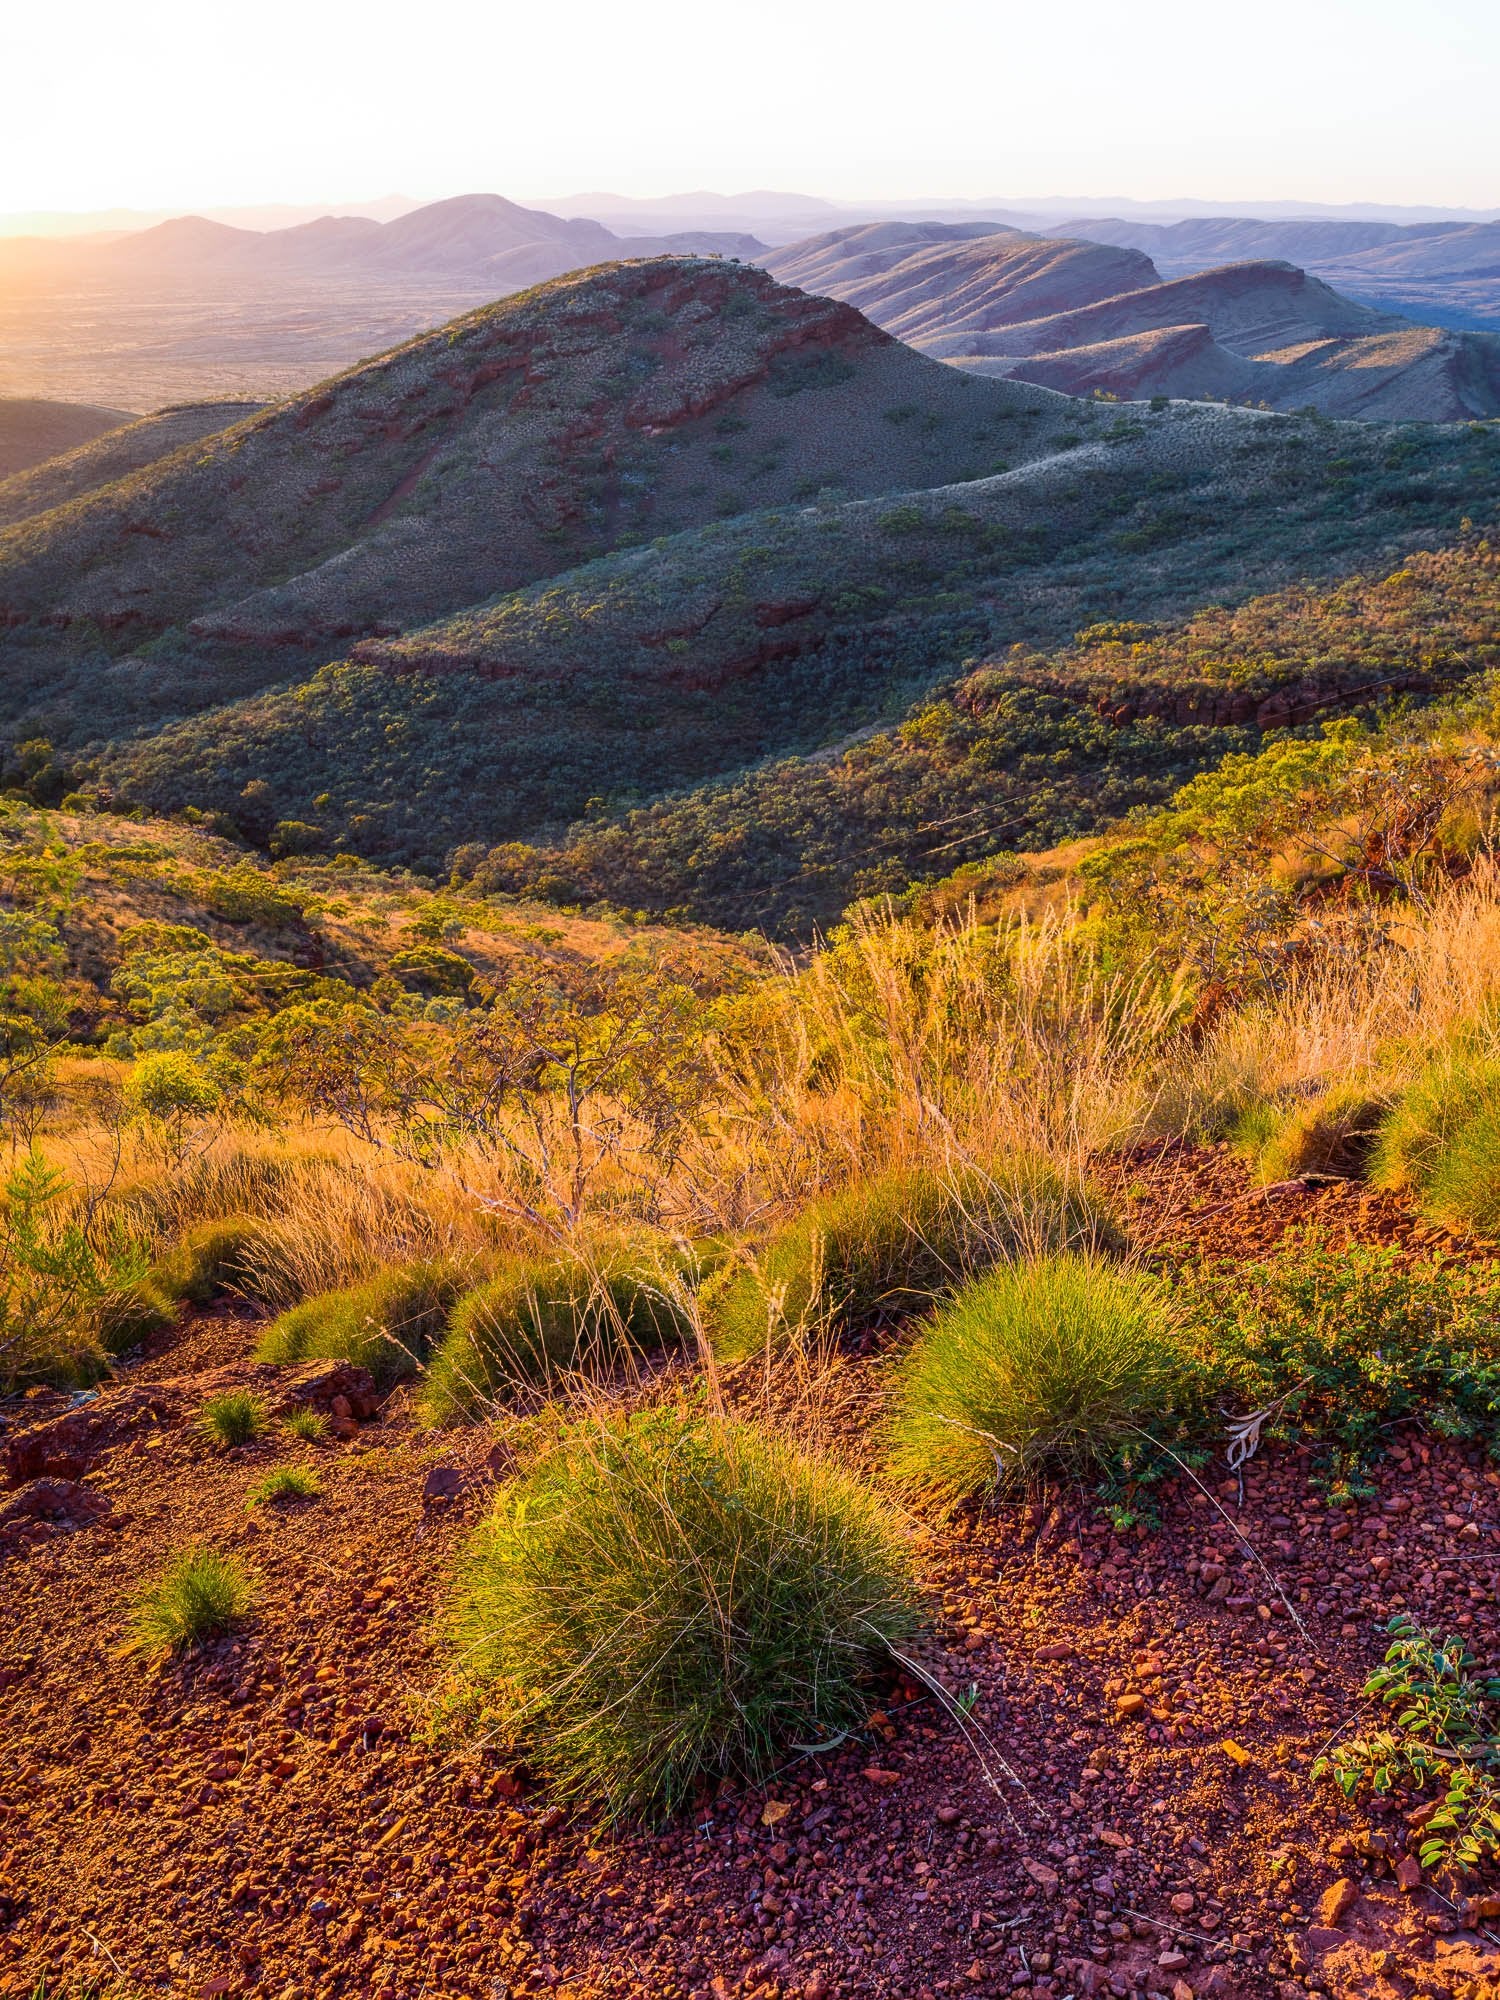 Mount Nameless at sunset, The Pilbara